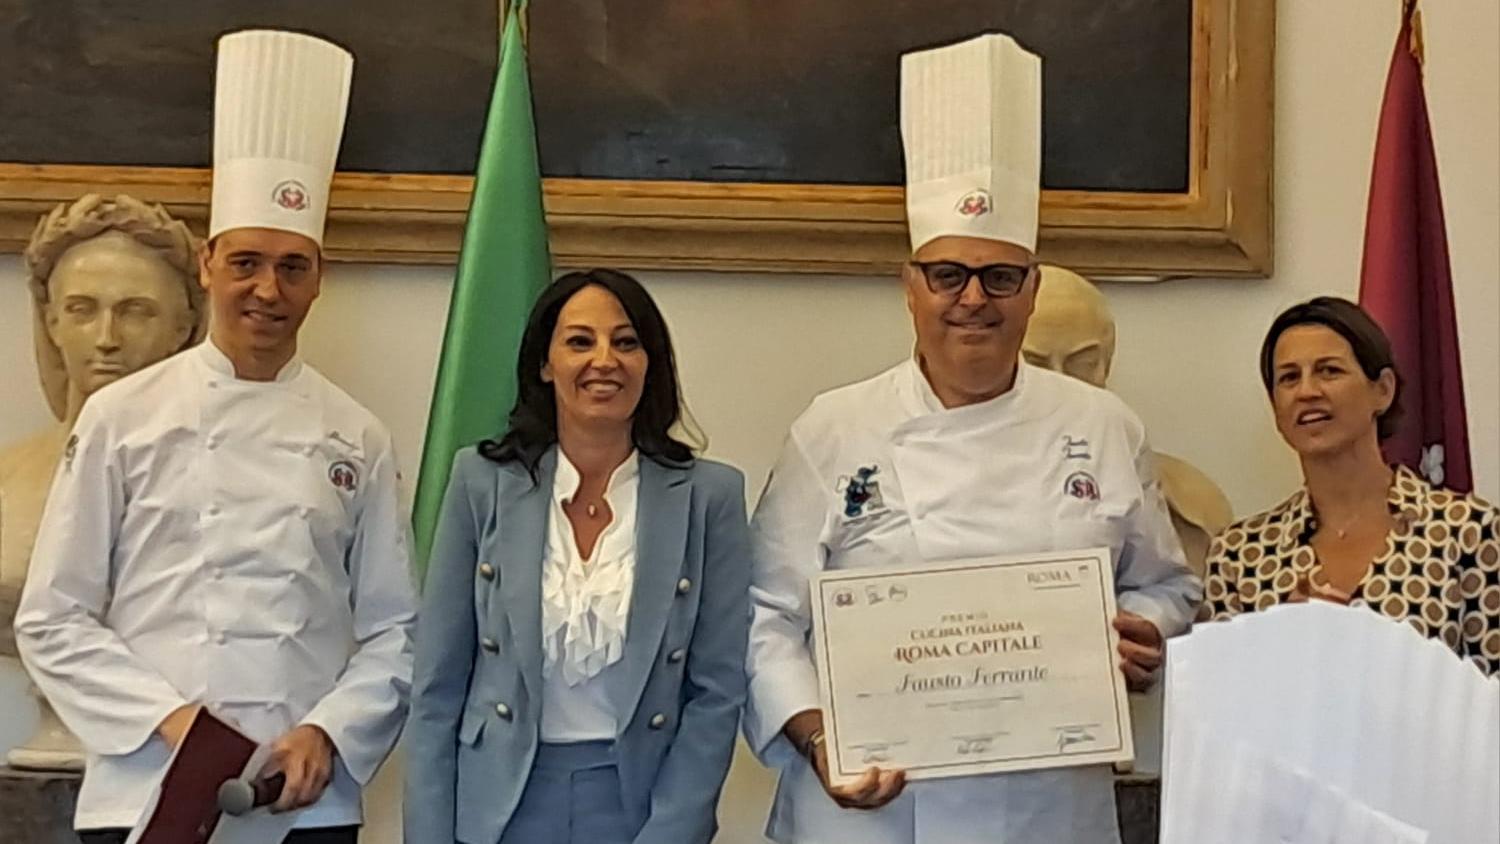 Premio cucina italiana per roma capitale - Fausto Ferrante.